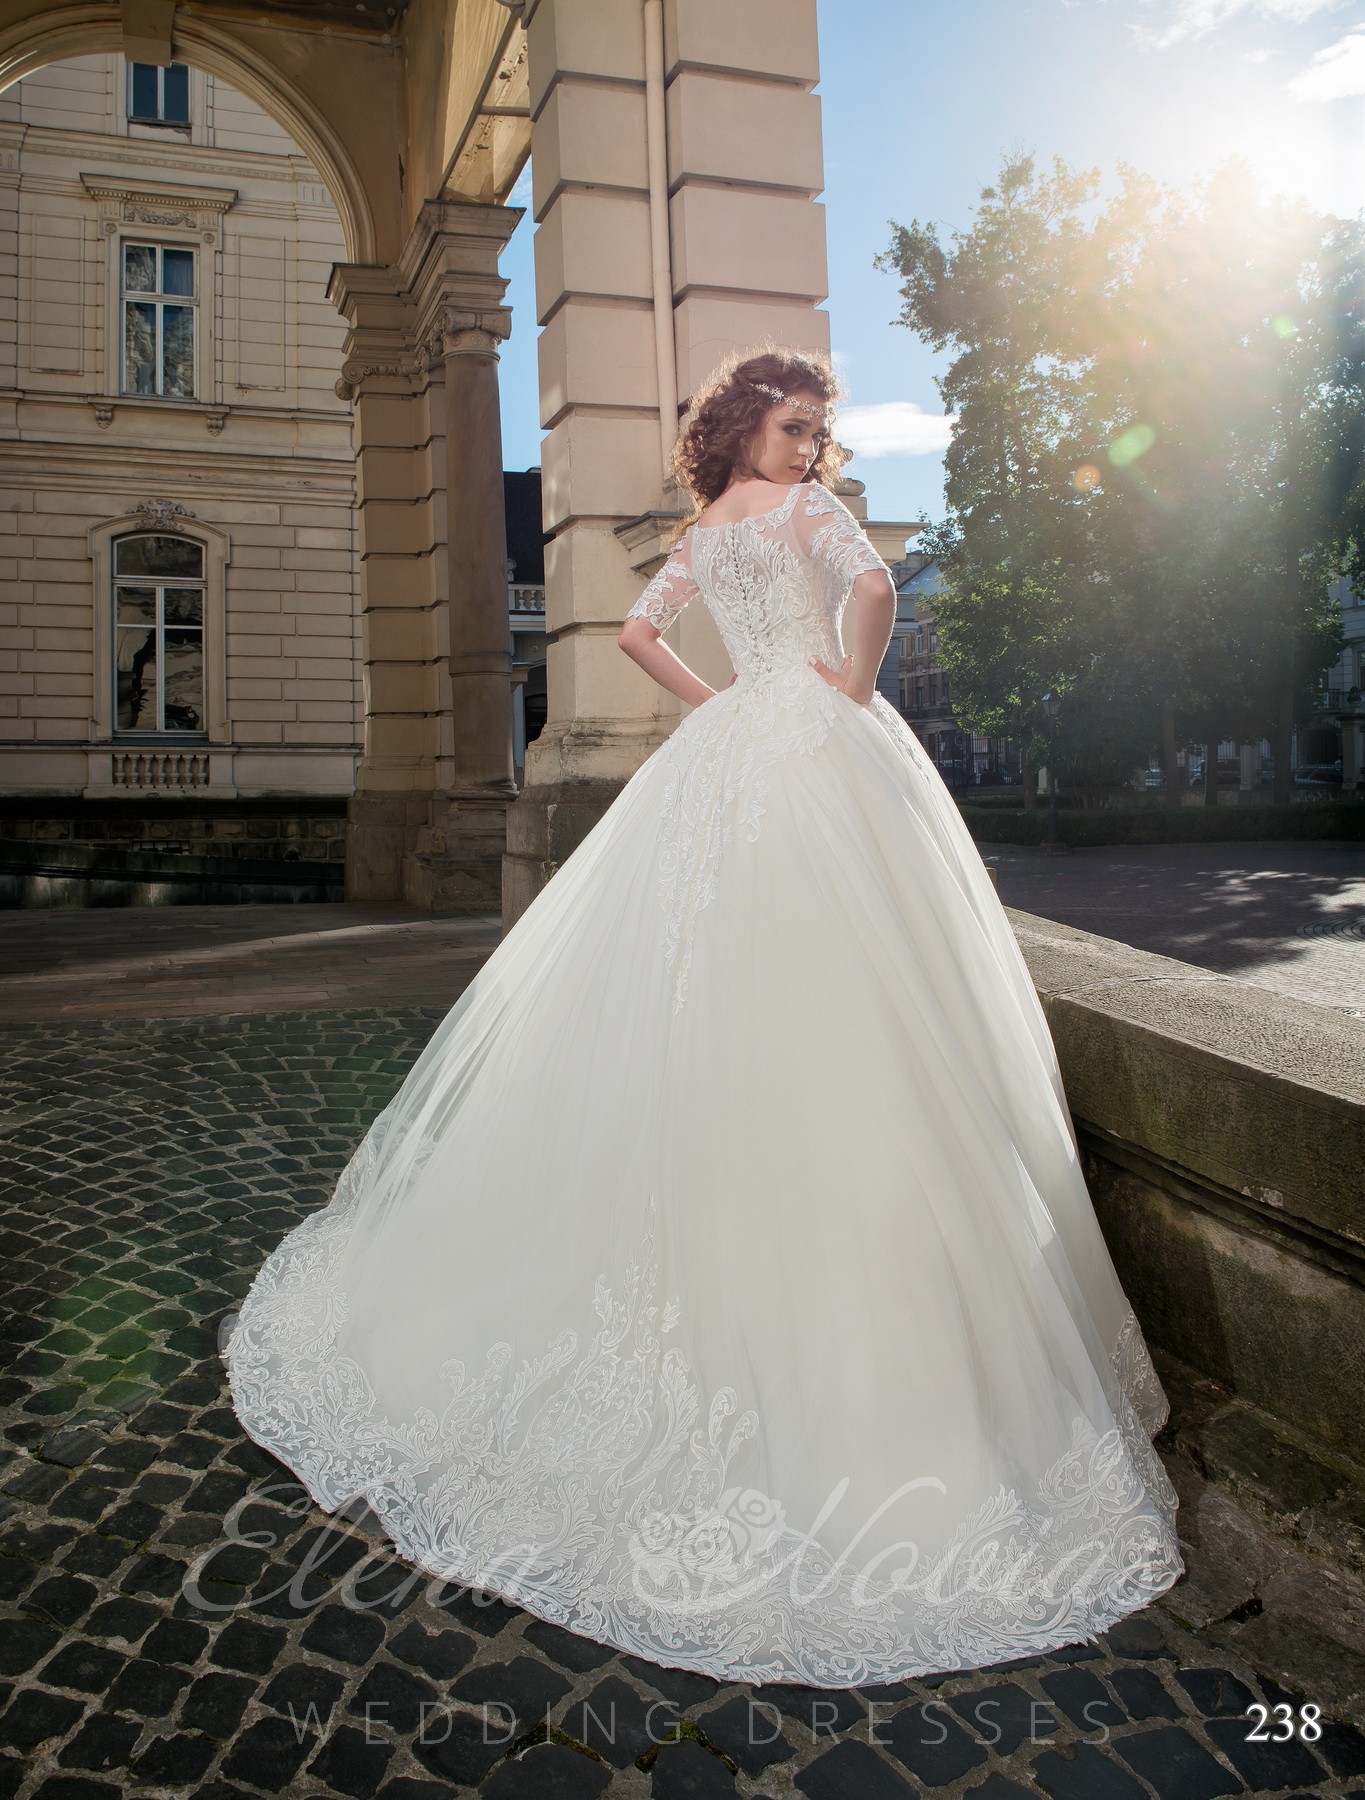 Wedding dress with an open corset model 238